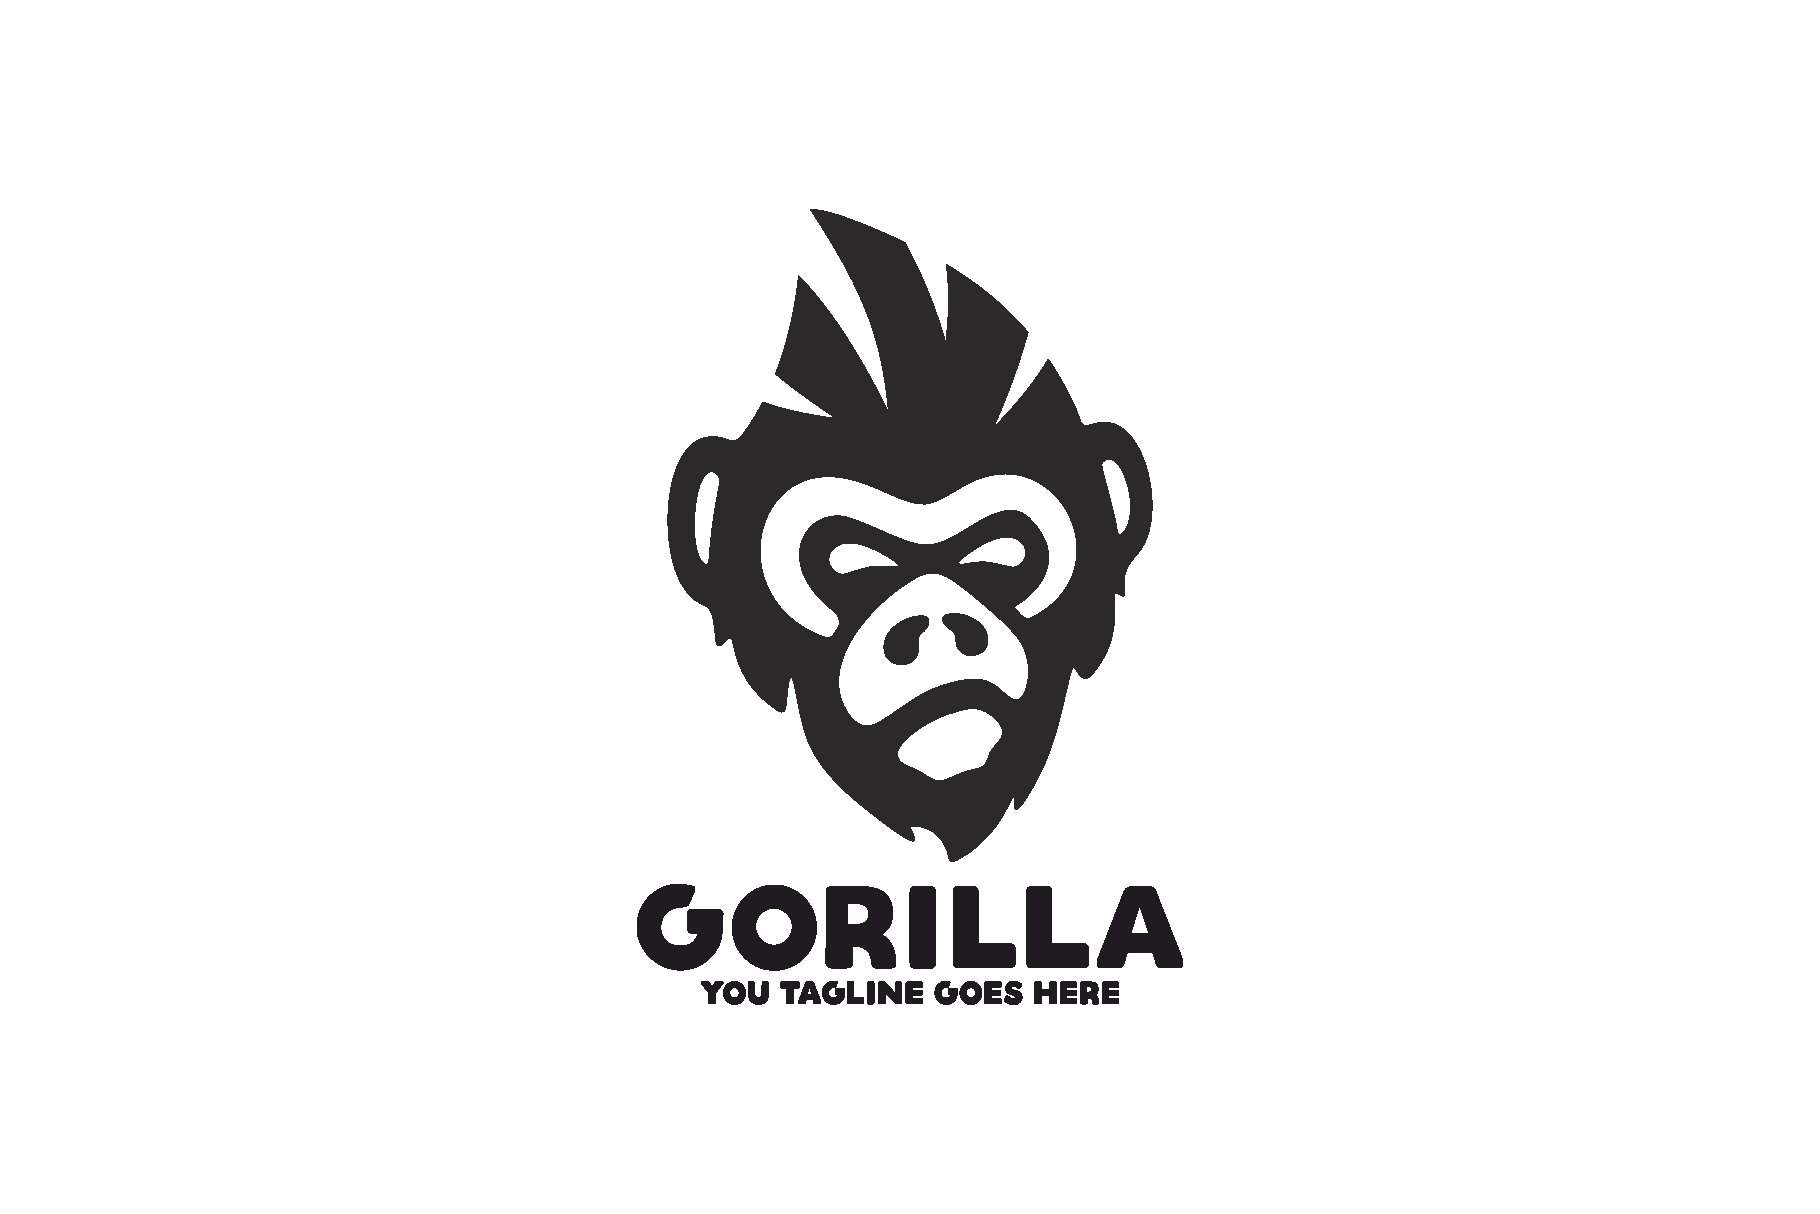 Gorilla logo preview image.